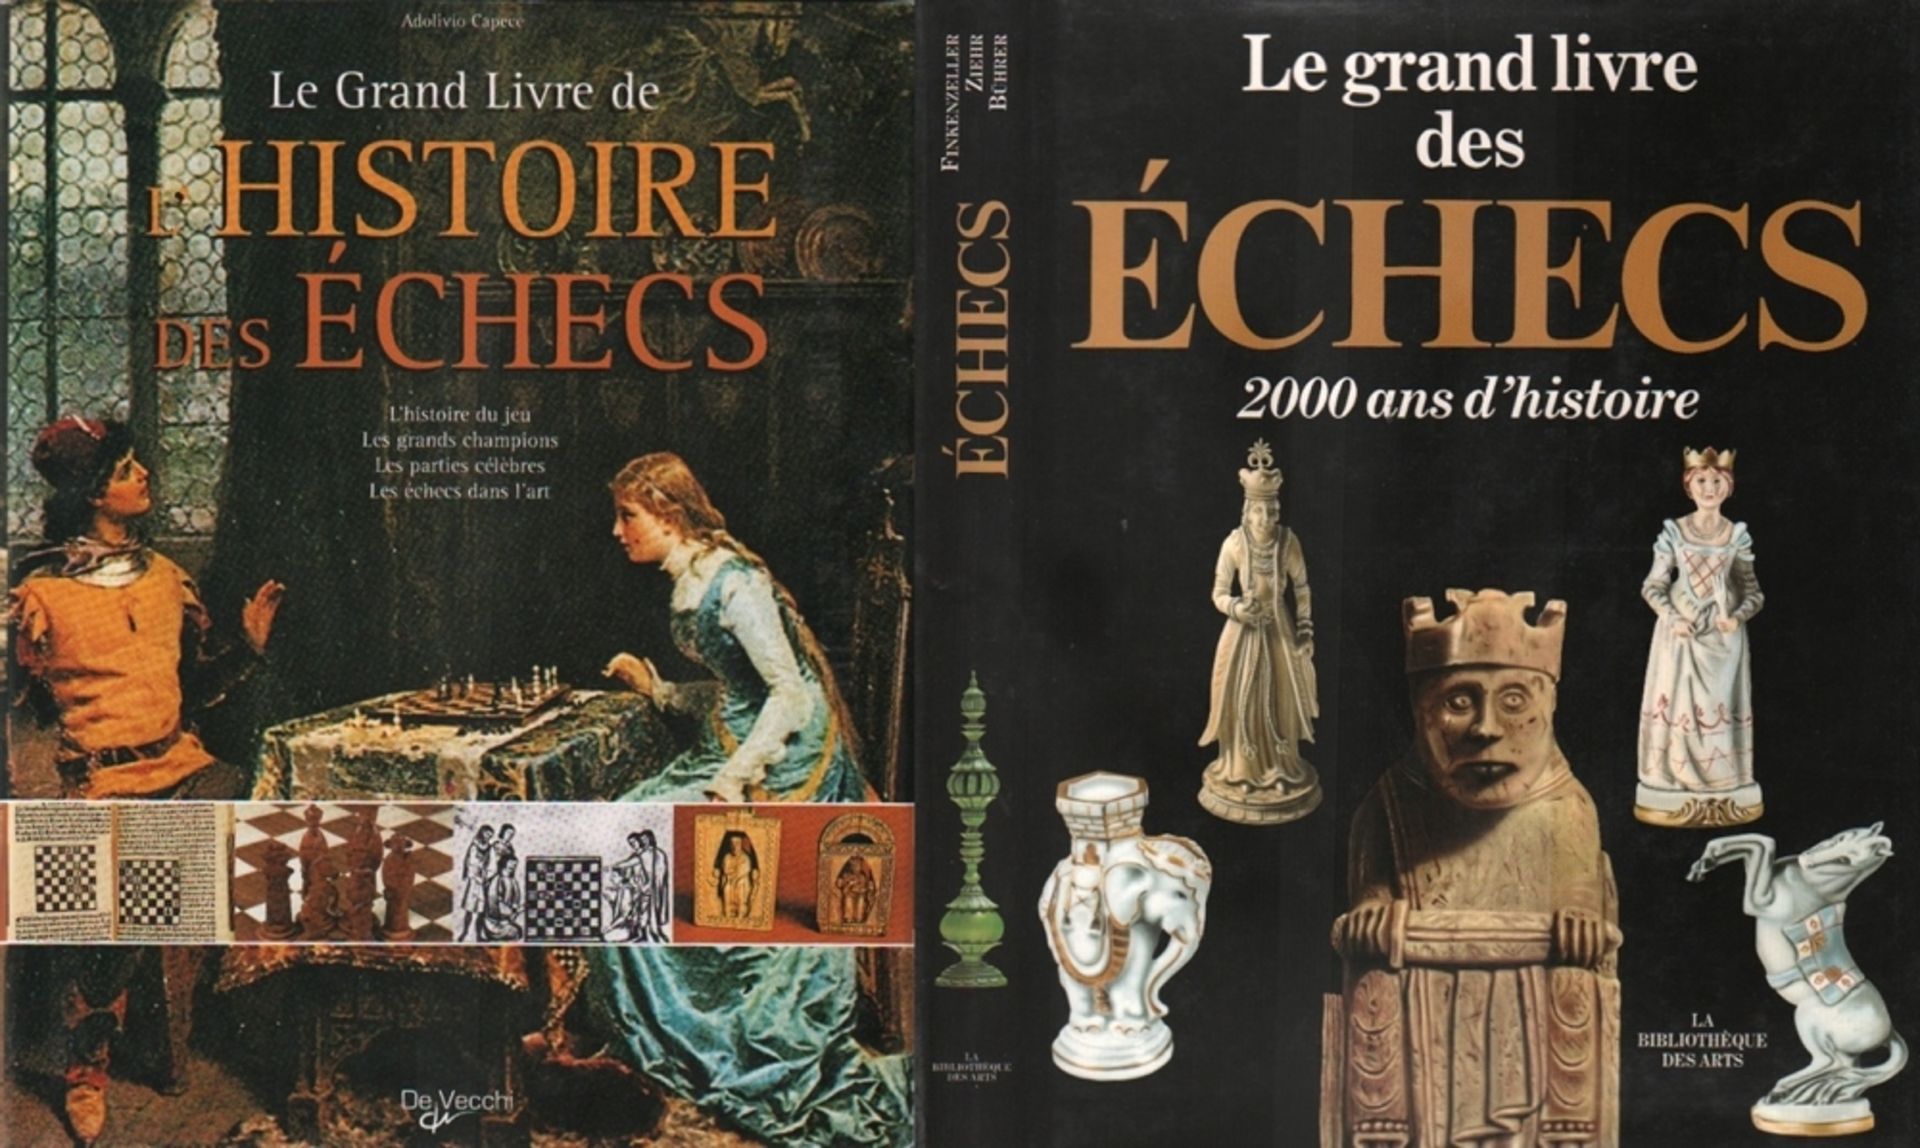 Capece, A. Le grand livre de l' histoire des echecs. Paris, de Vecchi, 2001. 8°. Mit teils